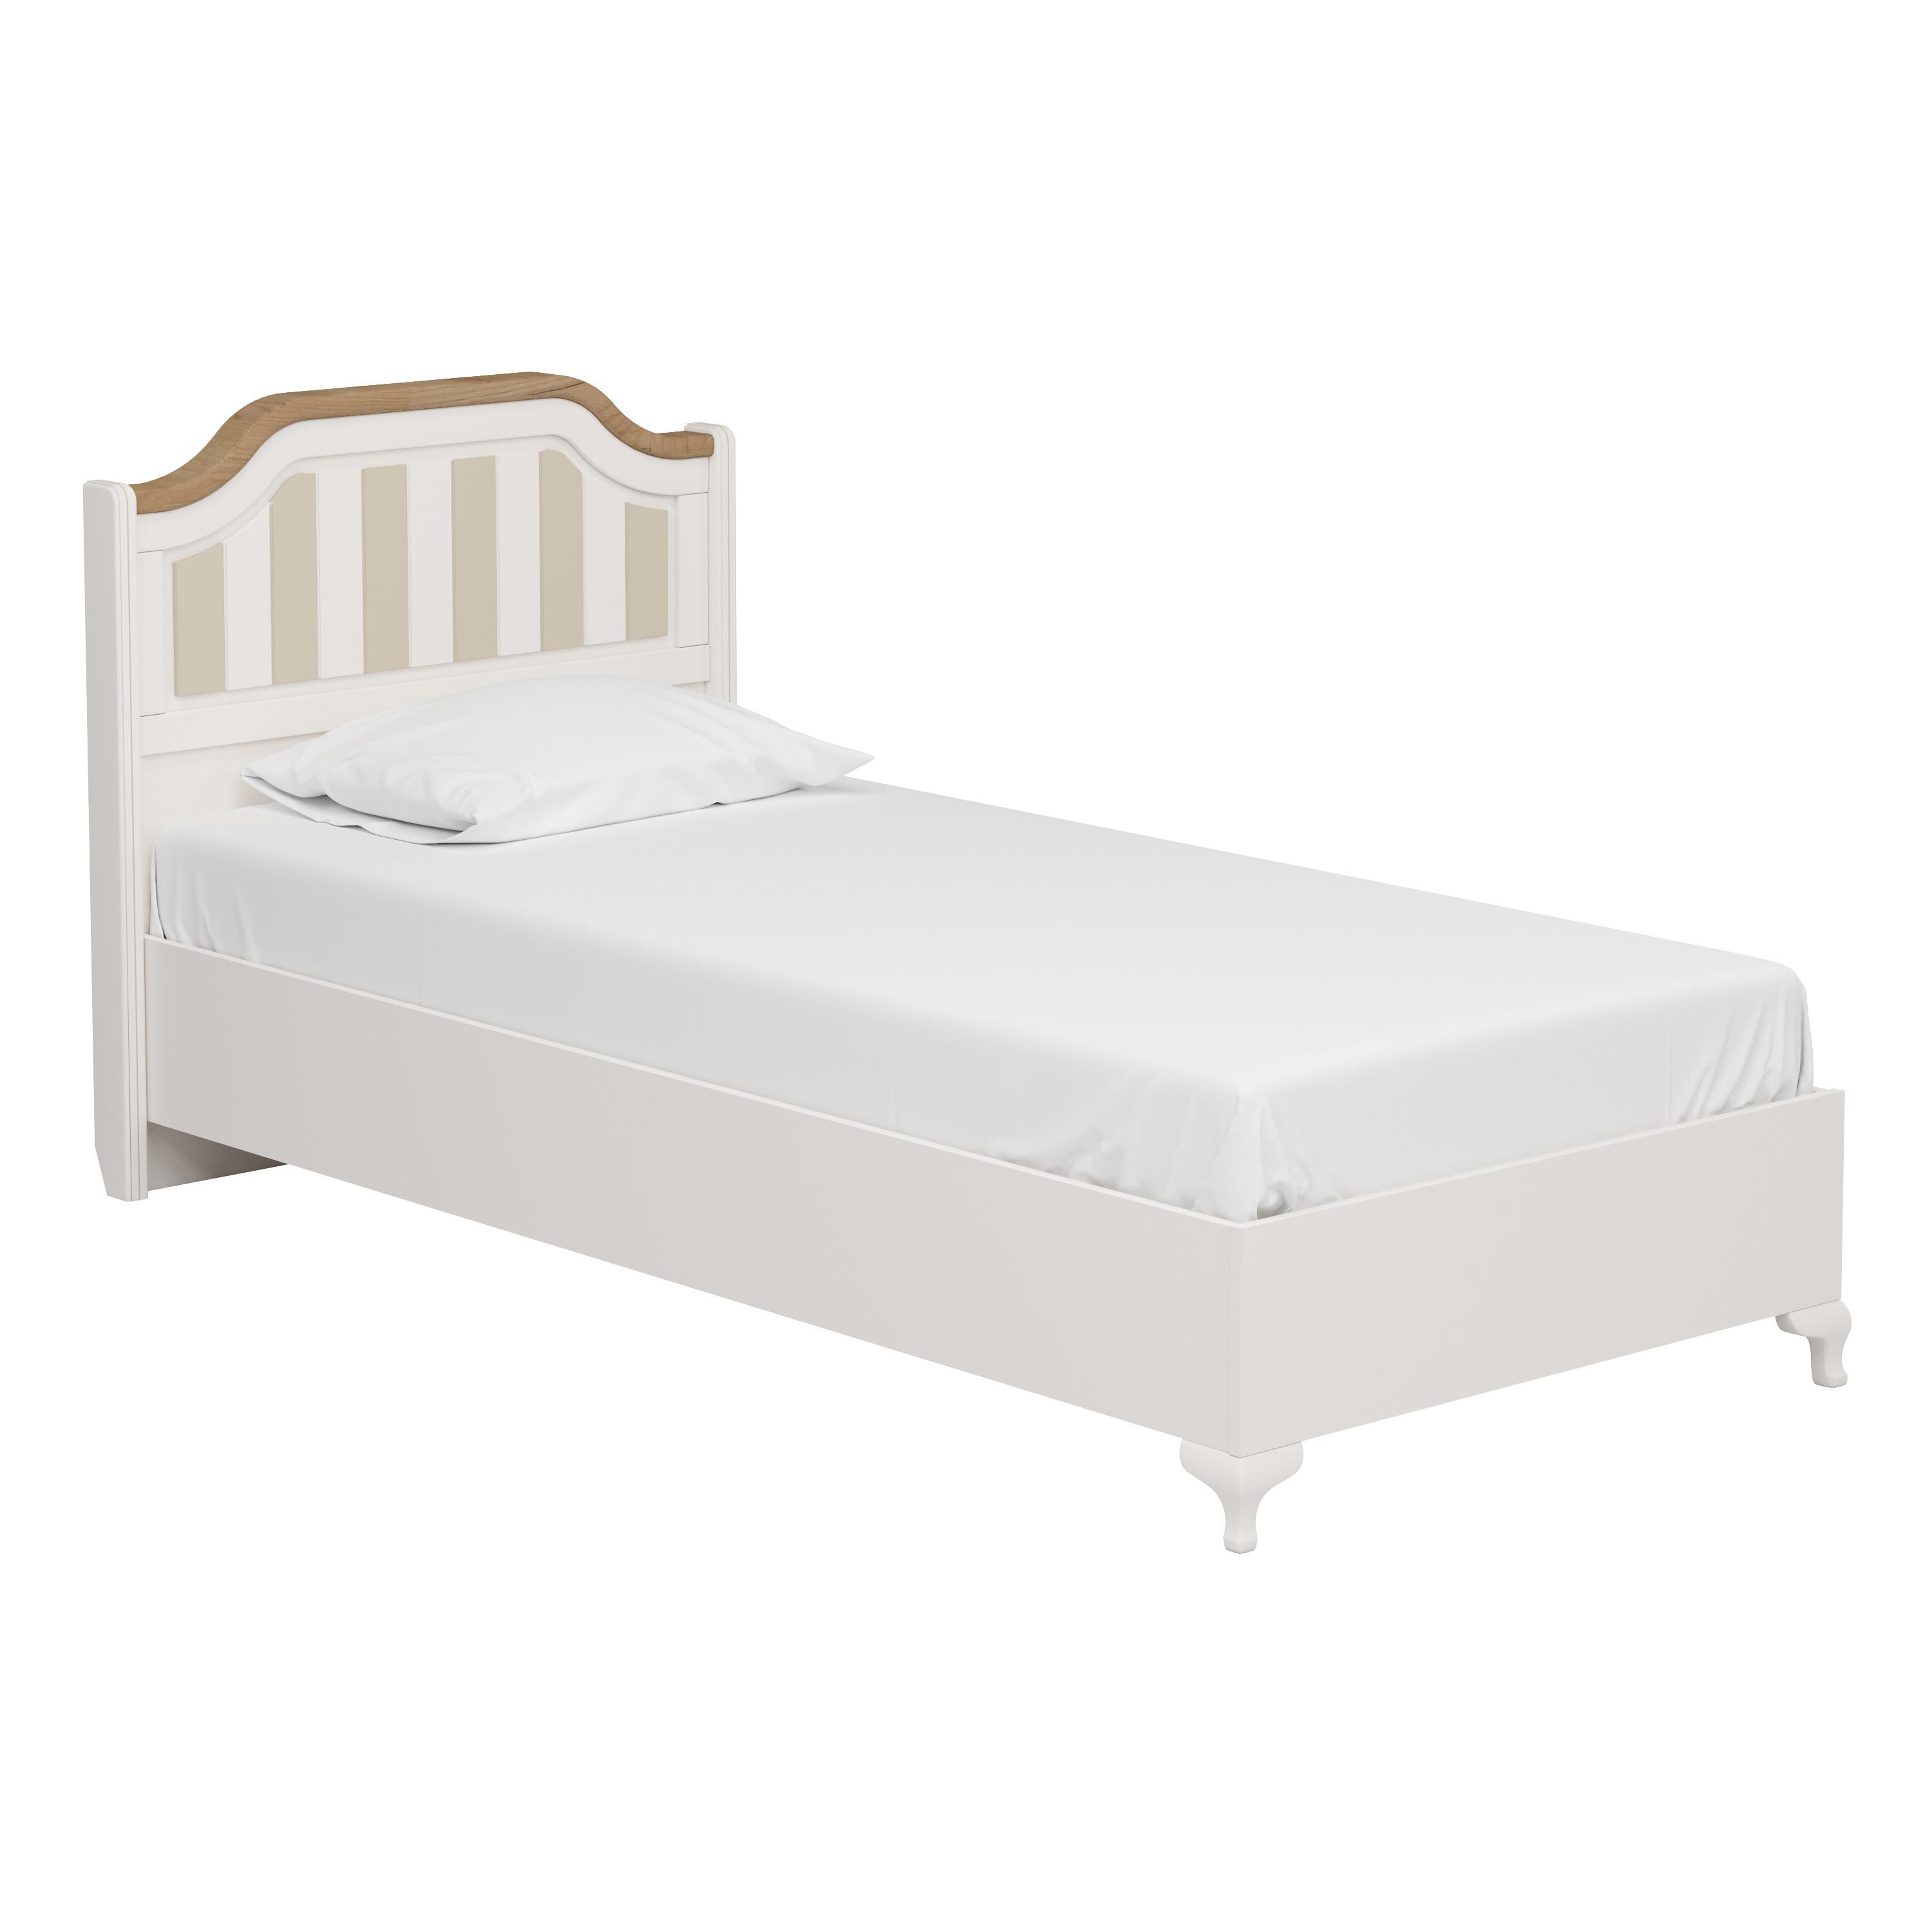 Jugendzimmer Bett in Weiß mit beigen Streifen.